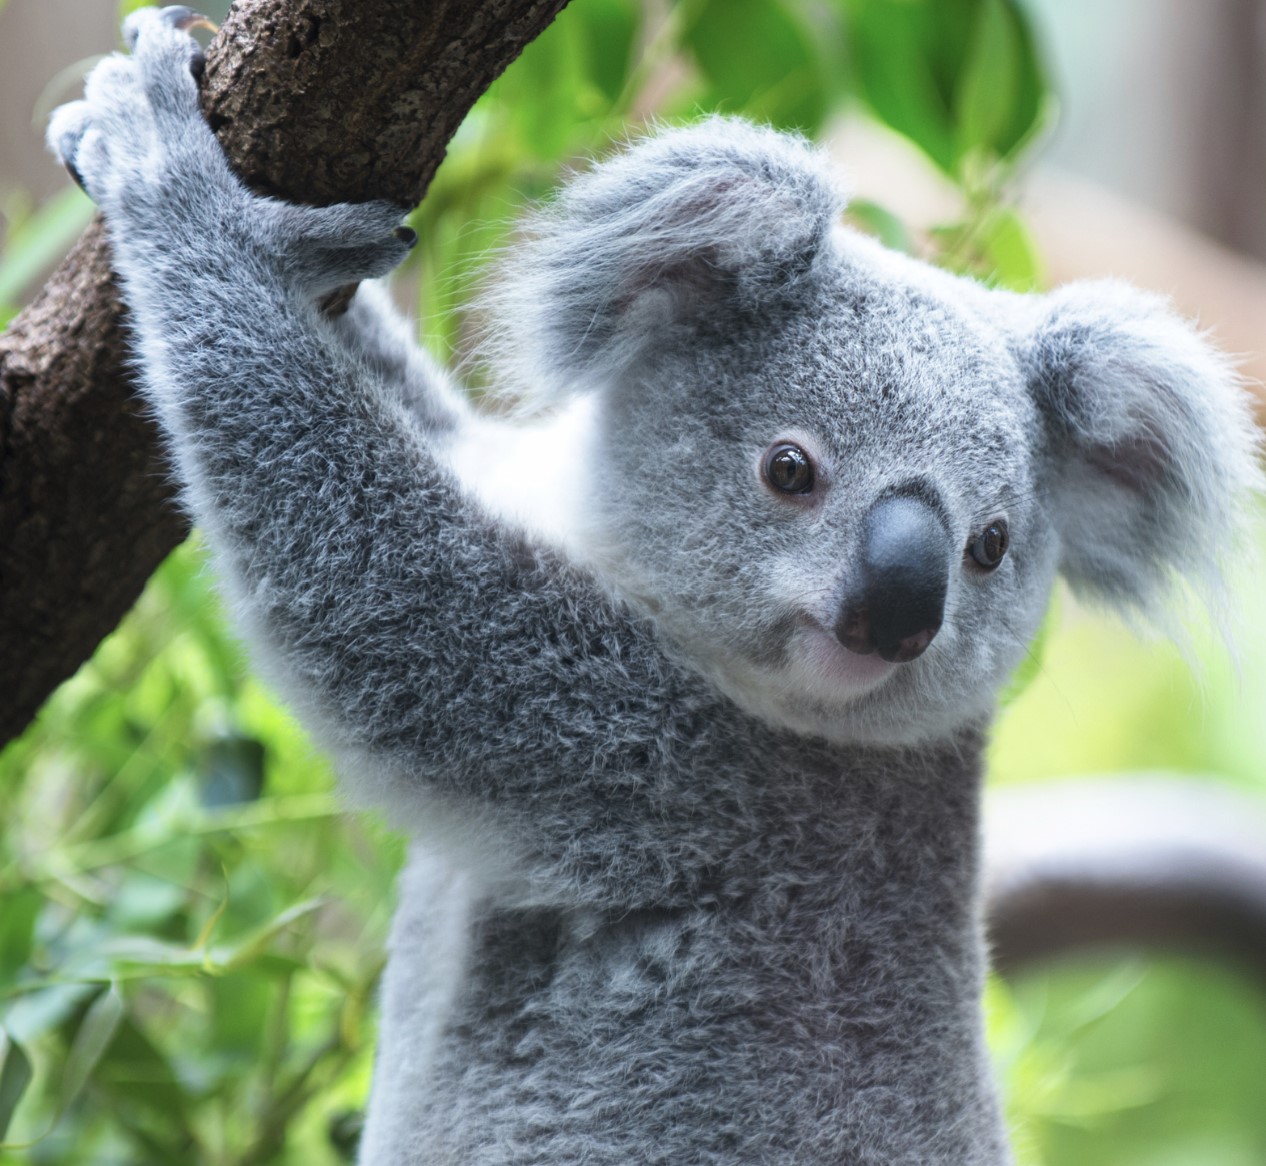 koala crisis december 2021 newsletter picture of a koala